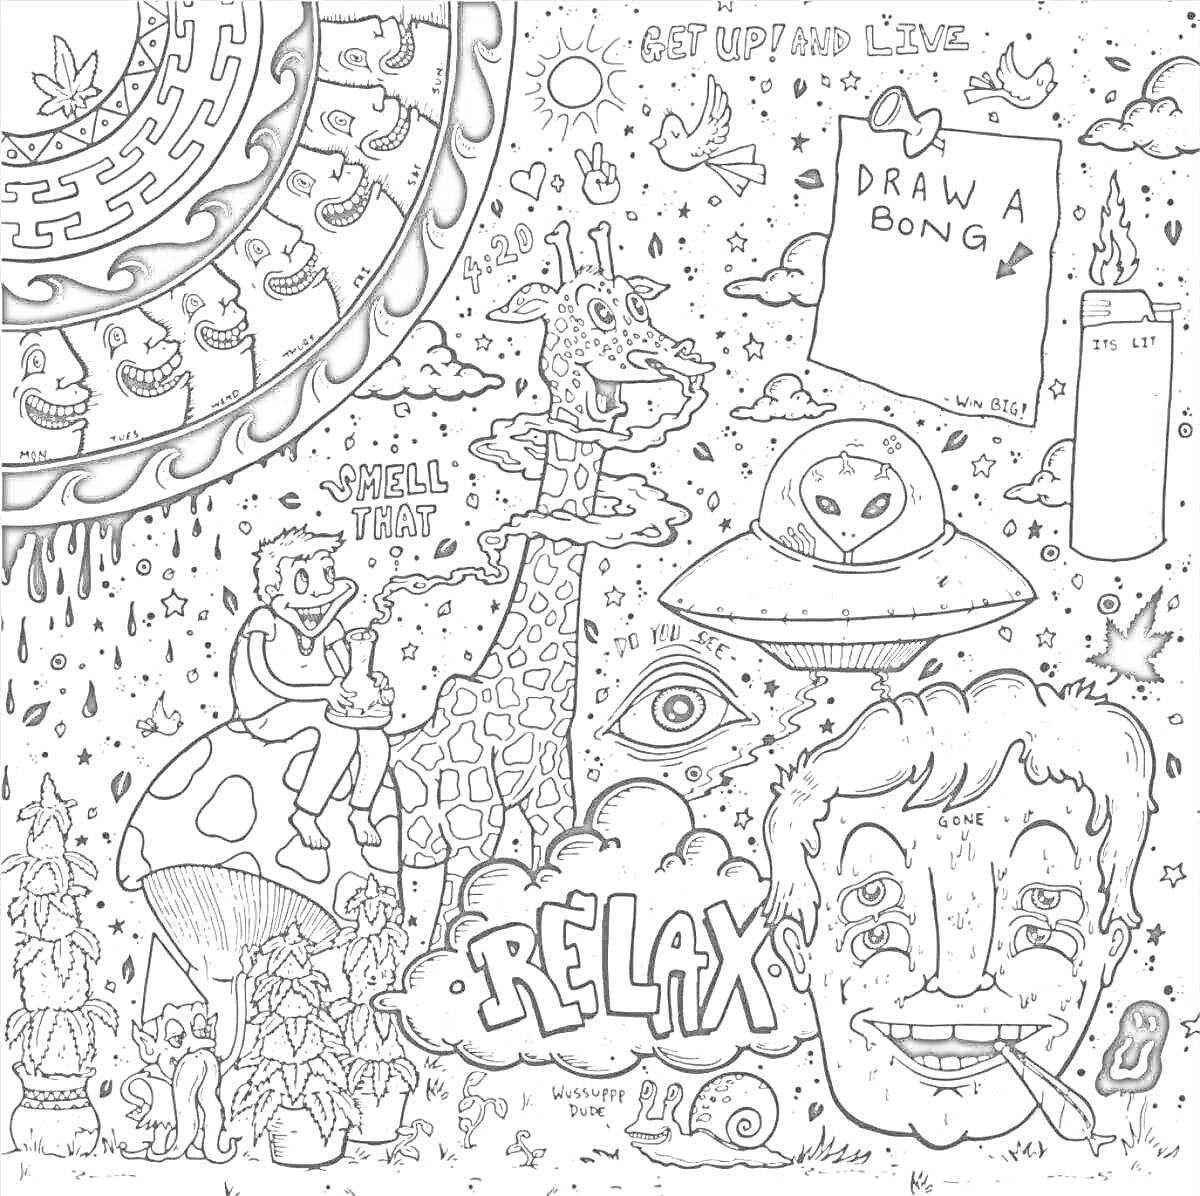 Психоделическая хиппи раскраска с жирафом, поющими грибами, НЛО, надписью 